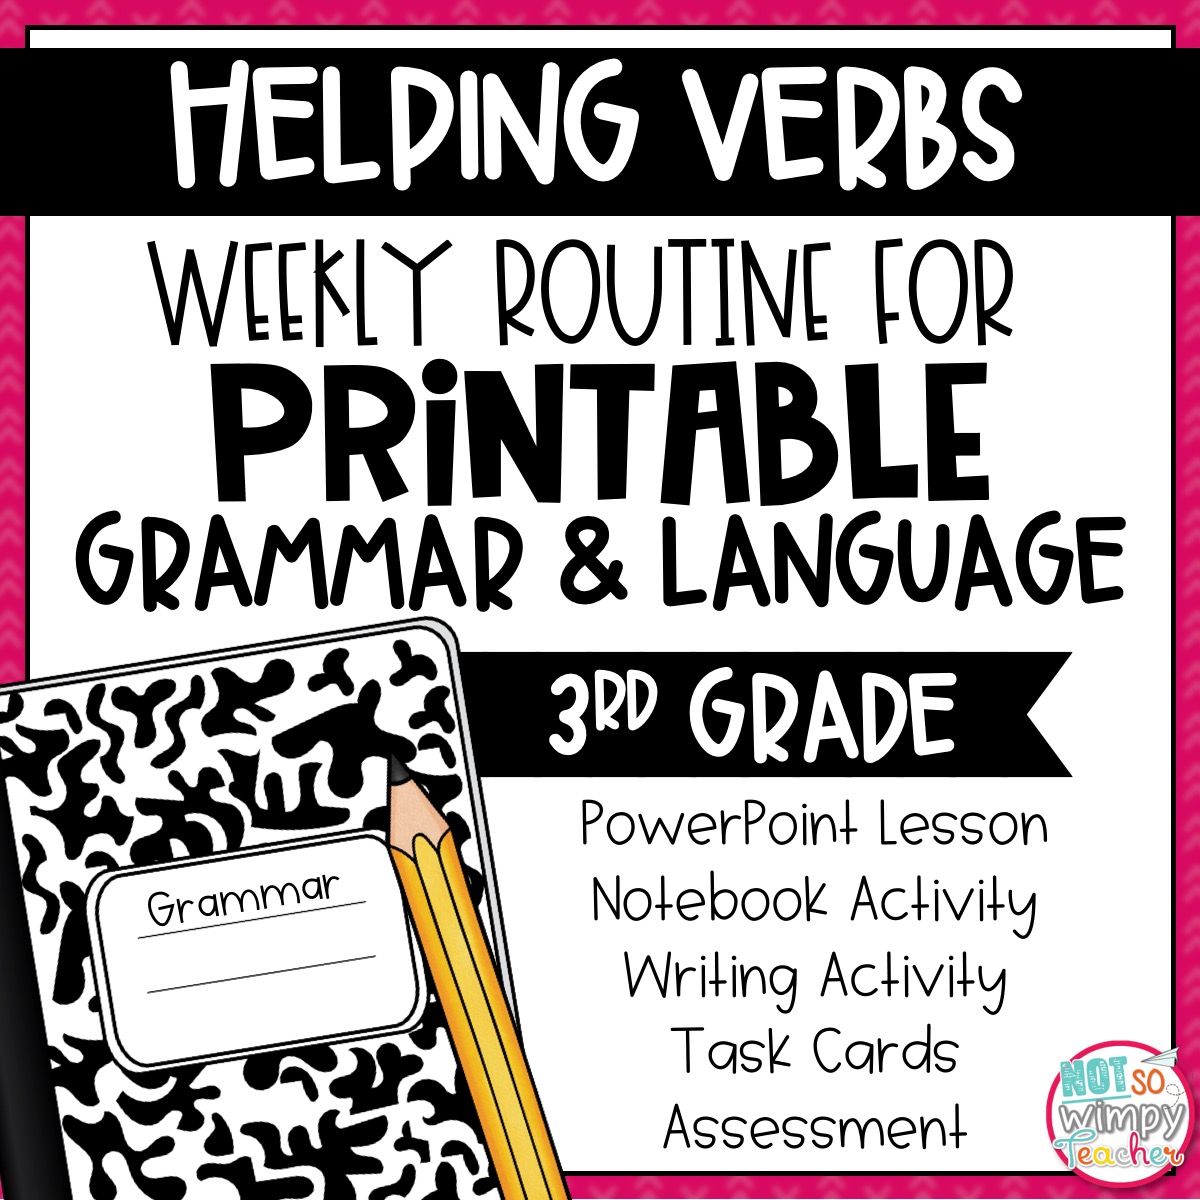 grammar-third-grade-activities-helping-verbs-not-so-wimpy-teacher